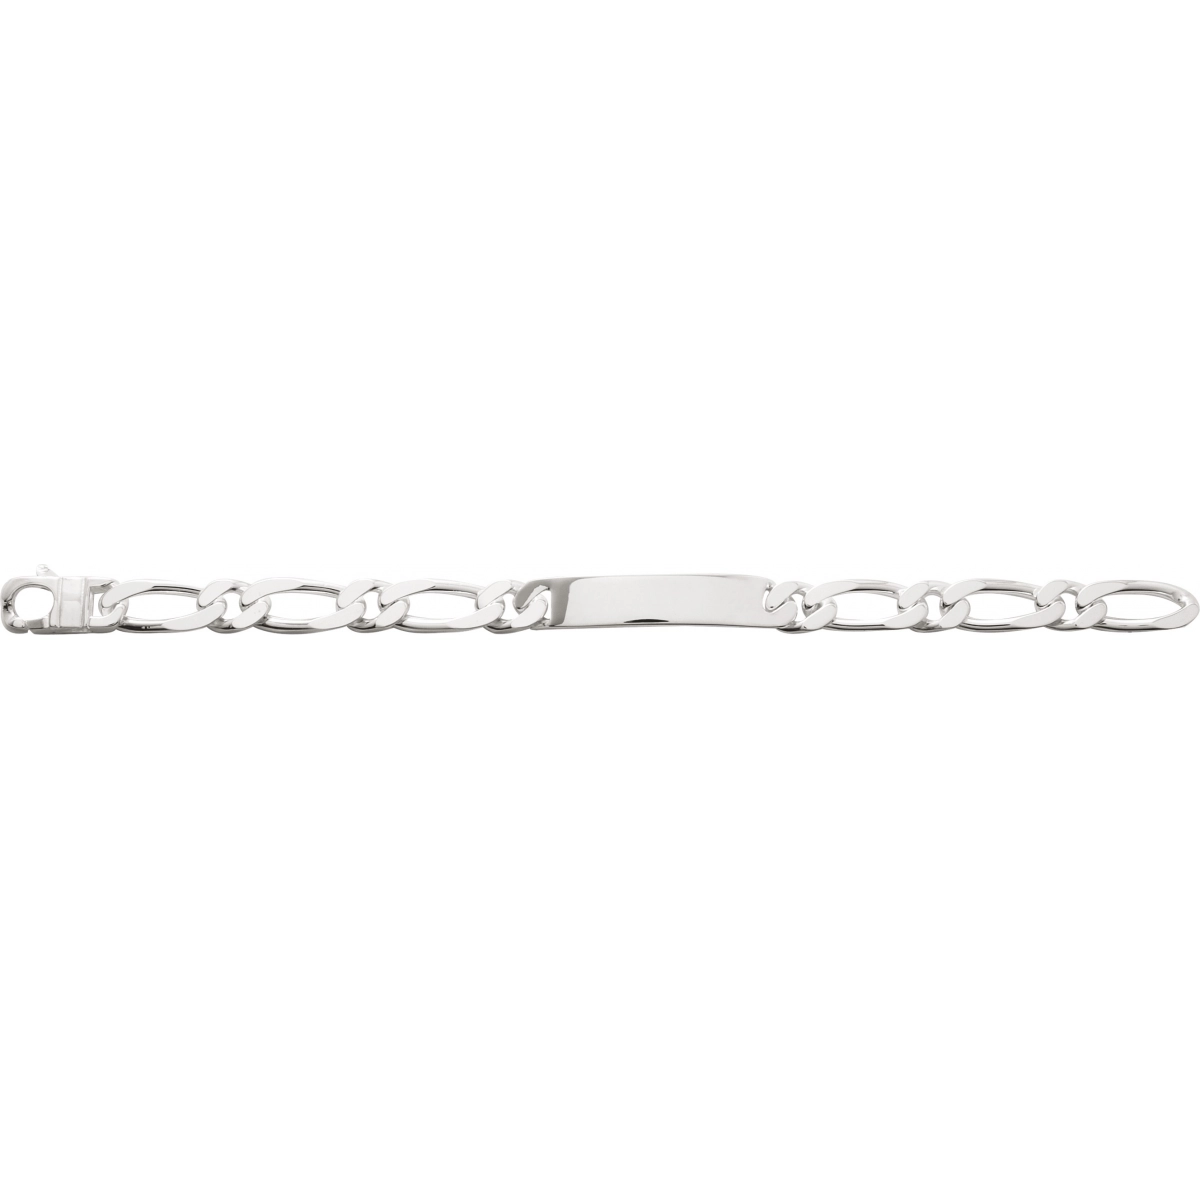 ID bracelet 10mm 925 Silver Lua Blanca  327476.89 - Size 22